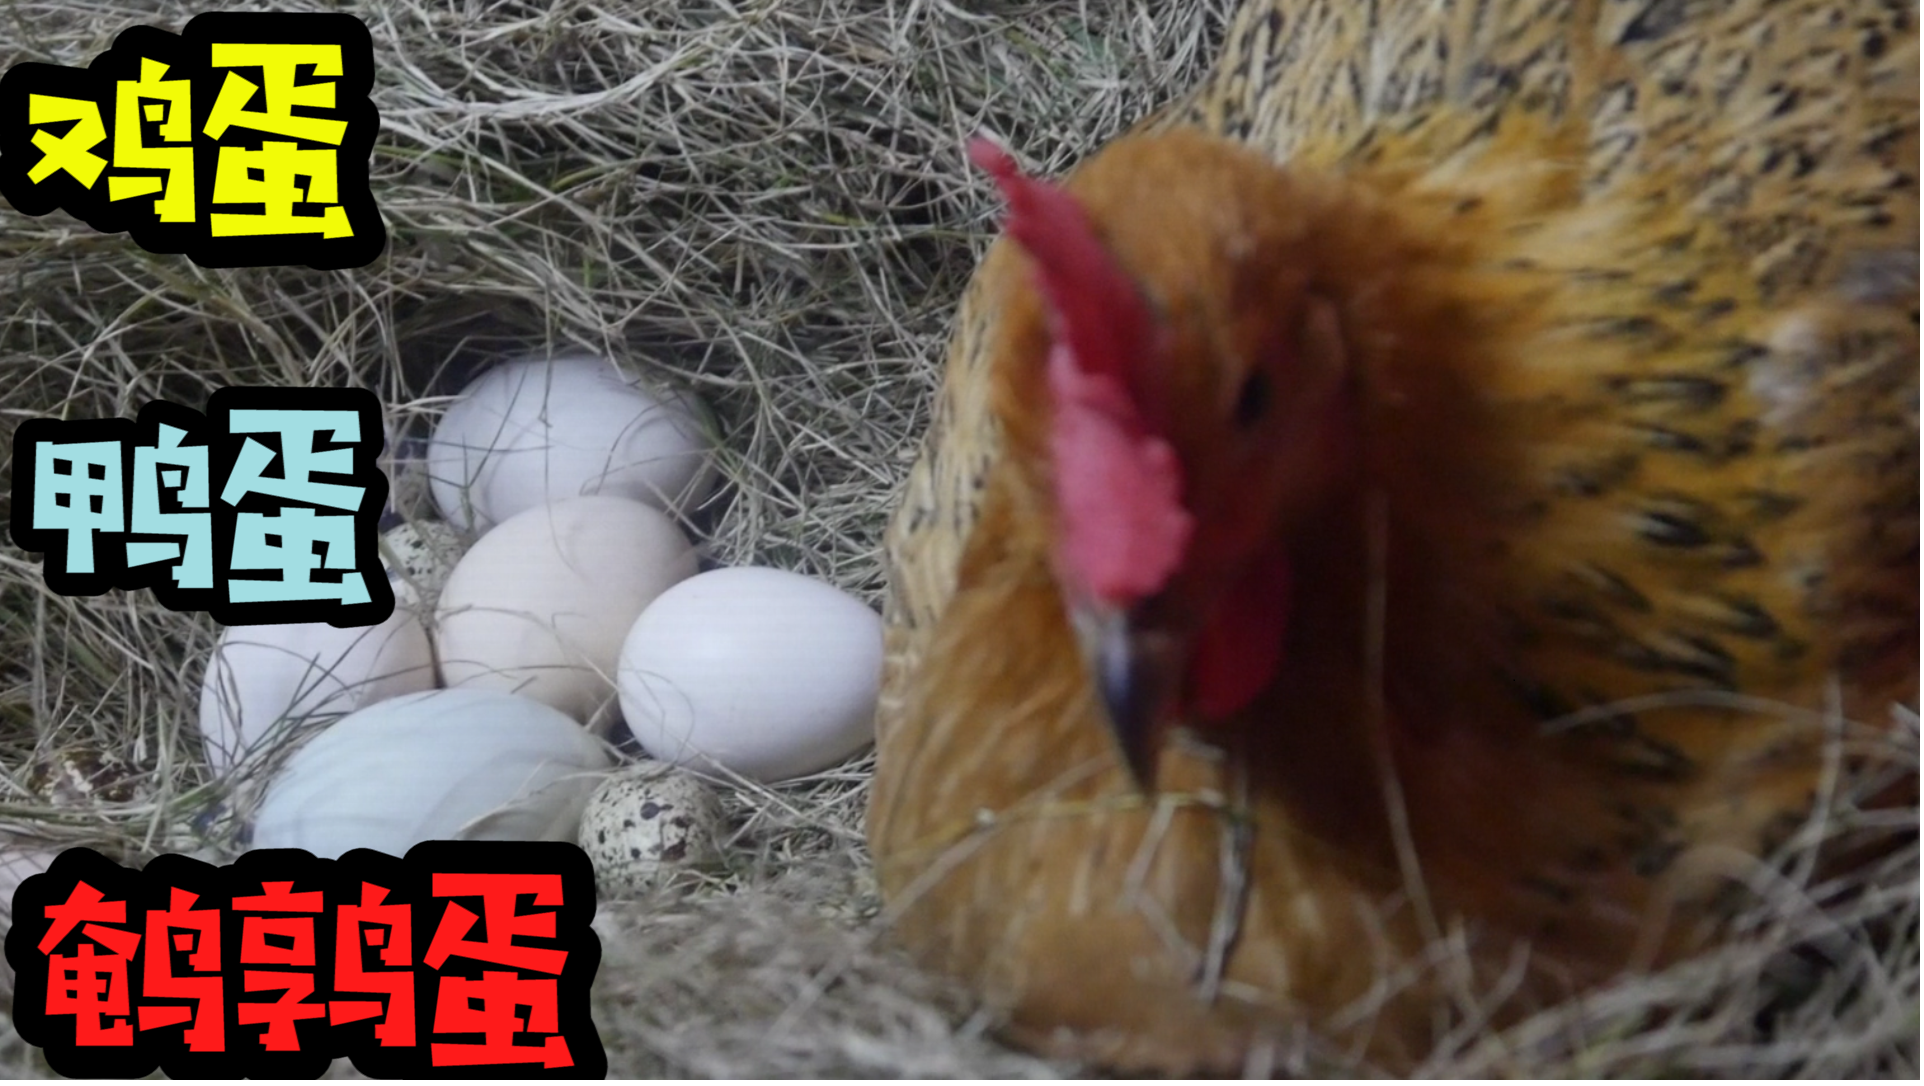 把三种动物的蛋放到鸡窝里，母鸡会帮忙孵化吗？